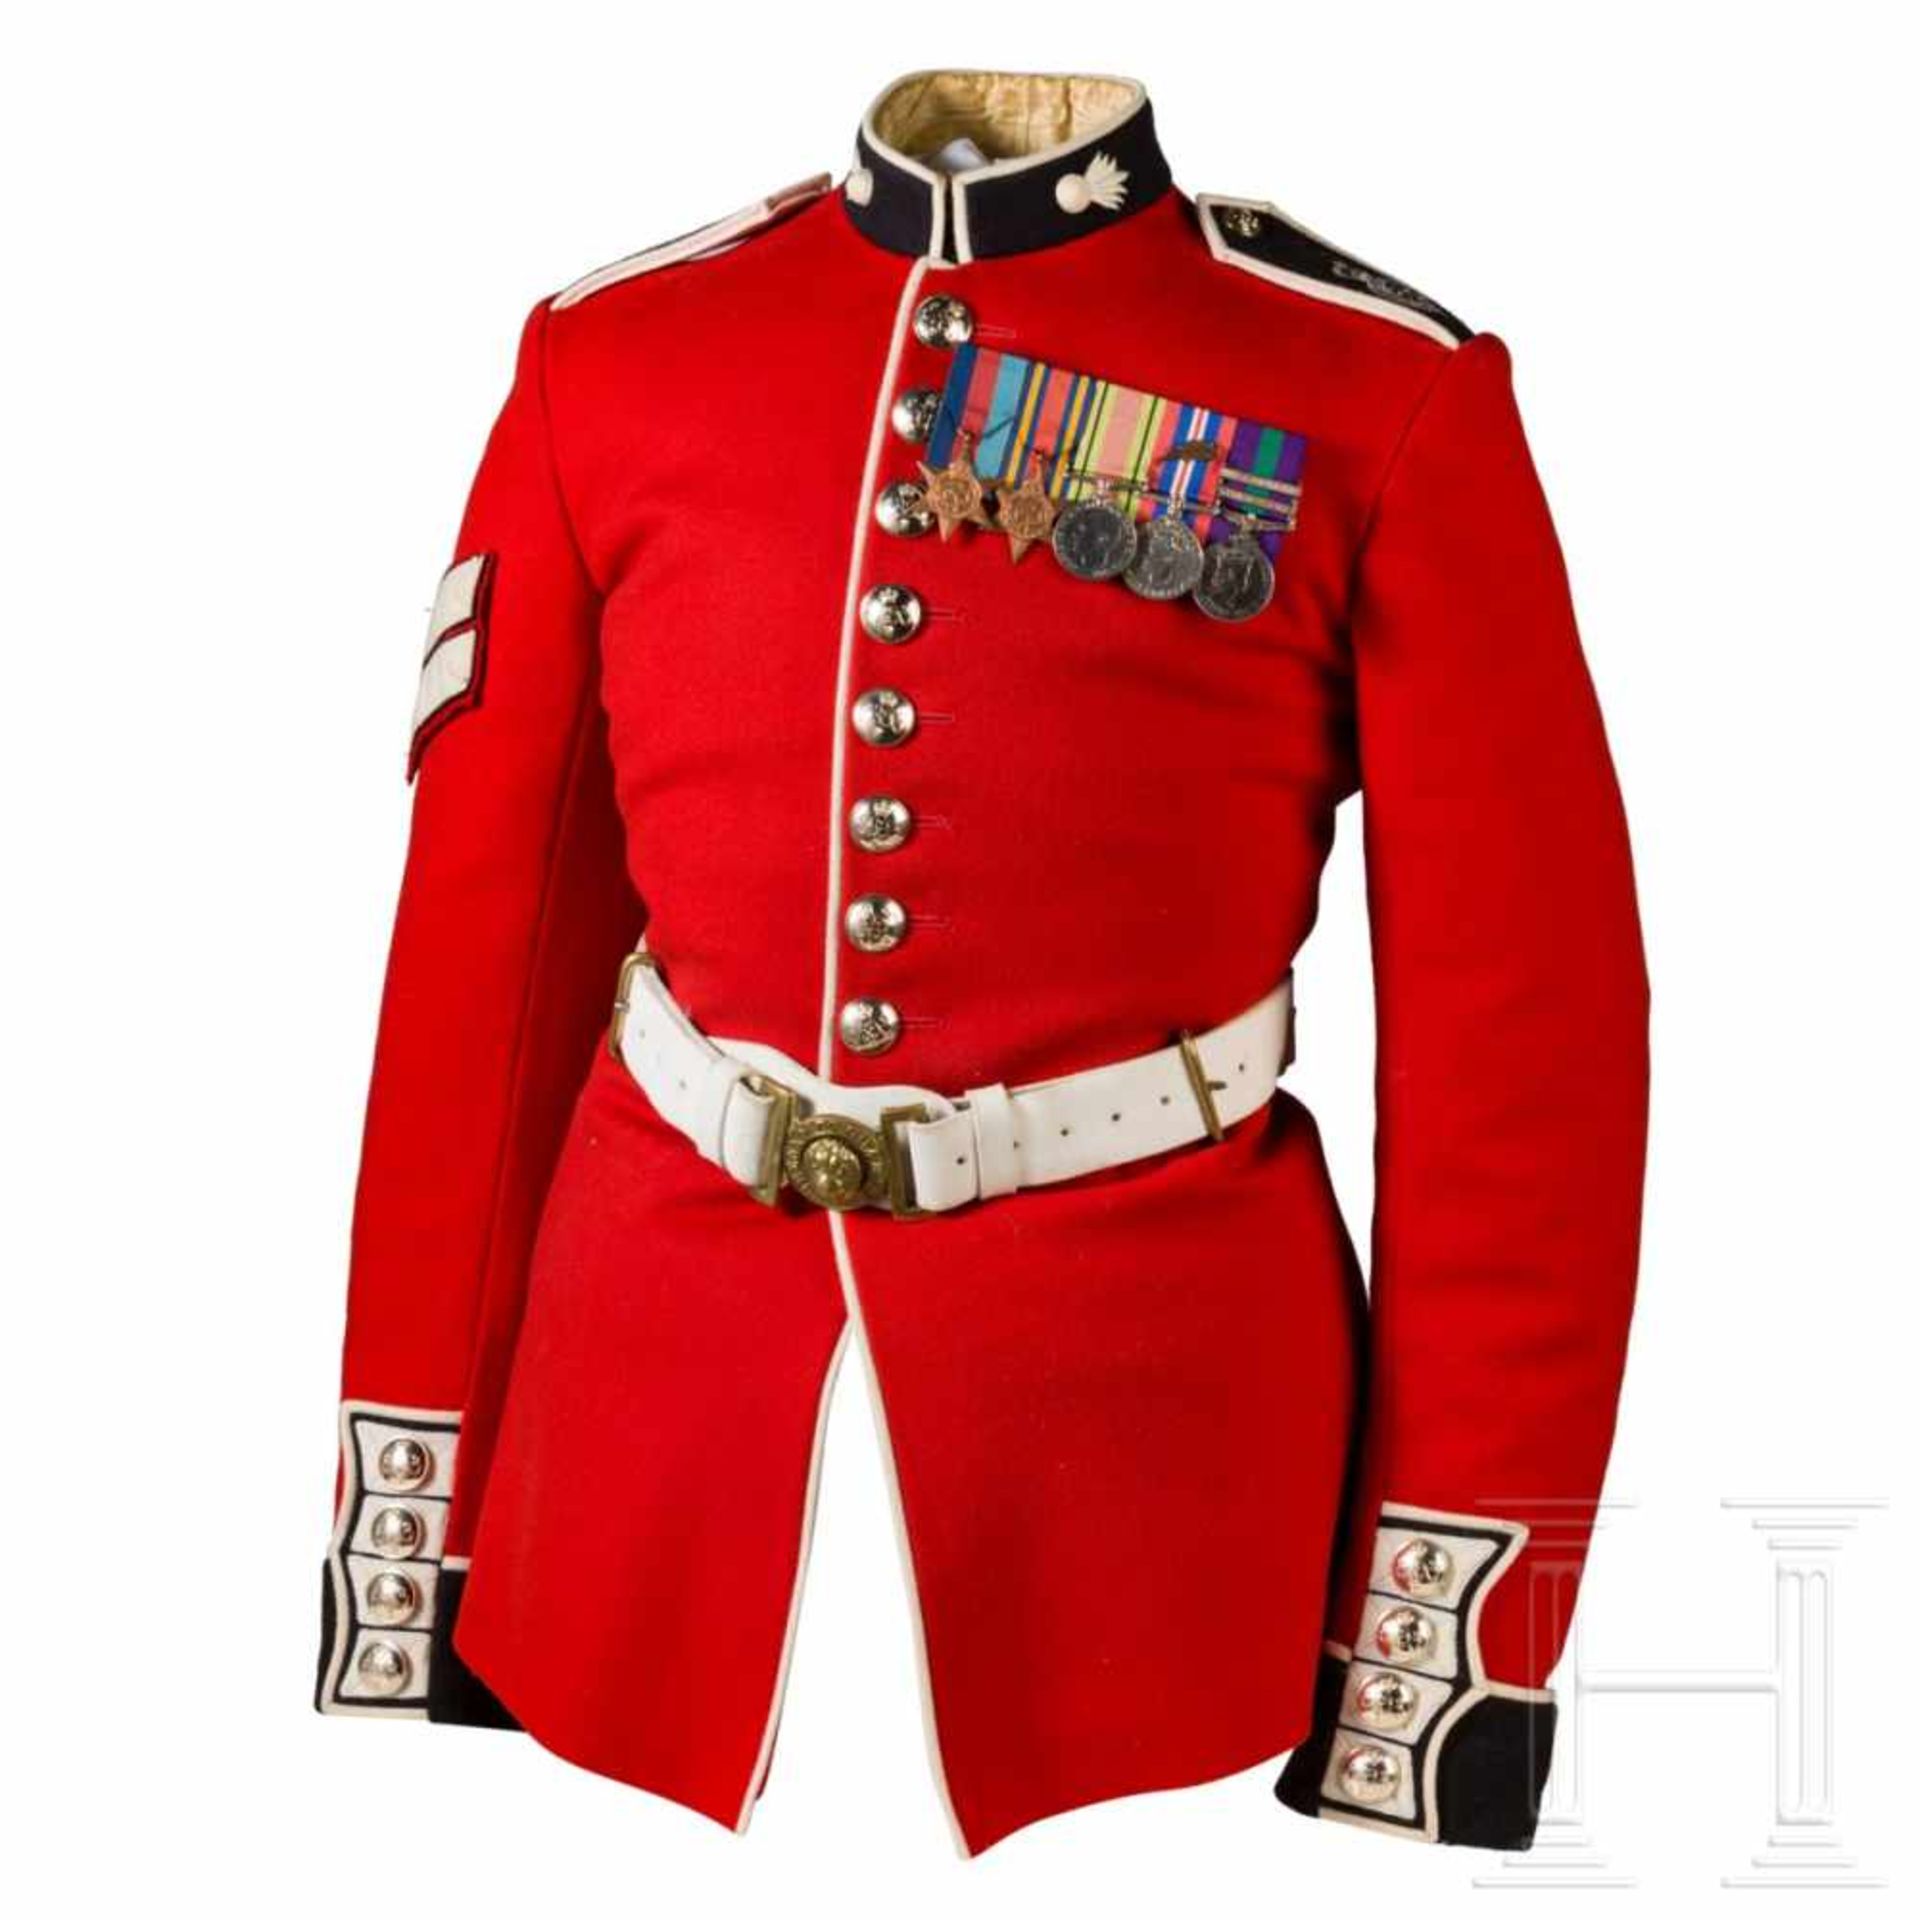 Uniformrock für einen Corporal der Grenadier Guards, 20. Jhdt.